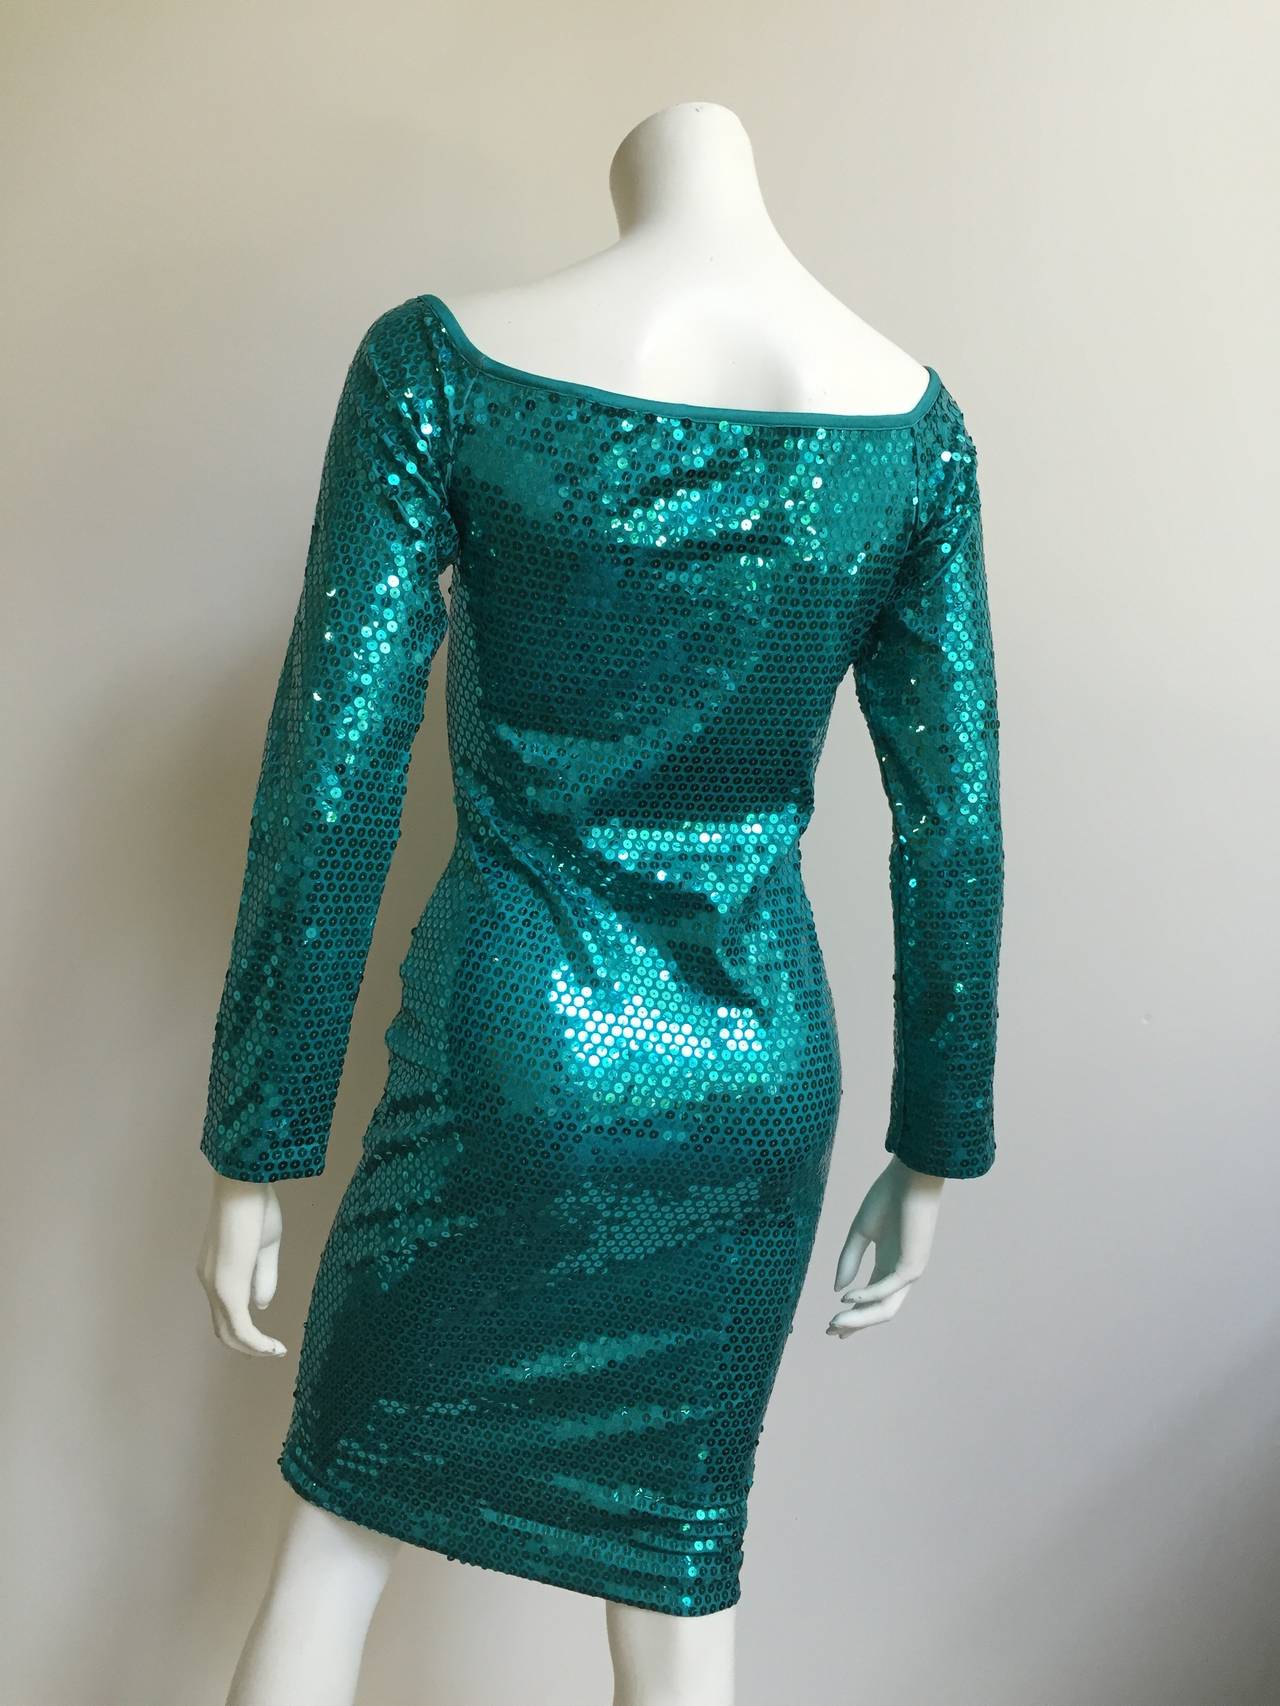 Blue Patrick Kelly Paris Sequin Evening dress Size 4. For Sale